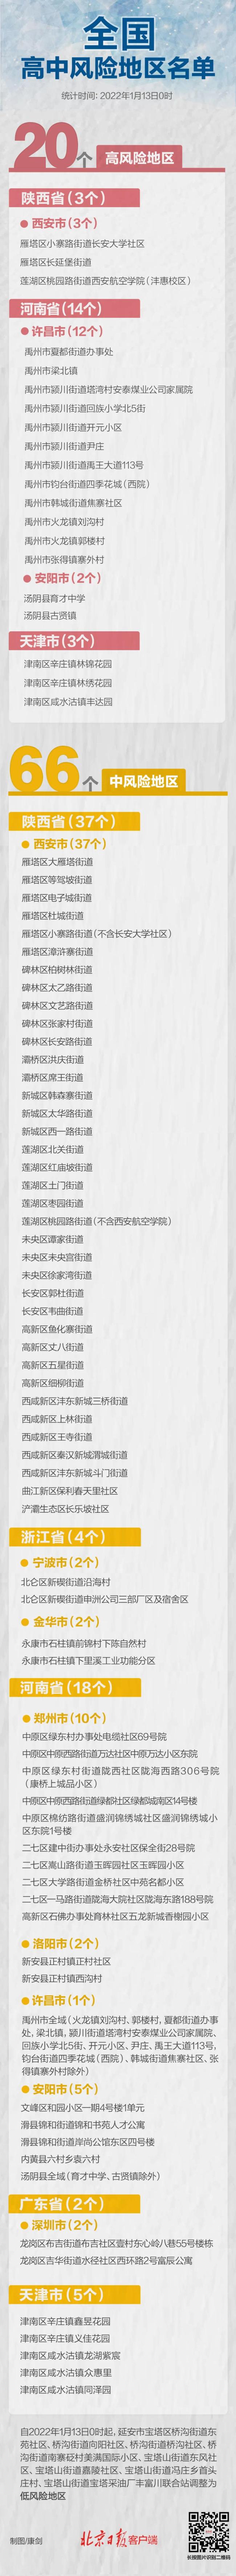 全国高中风险区现有20+66个 北京15家单位被通报